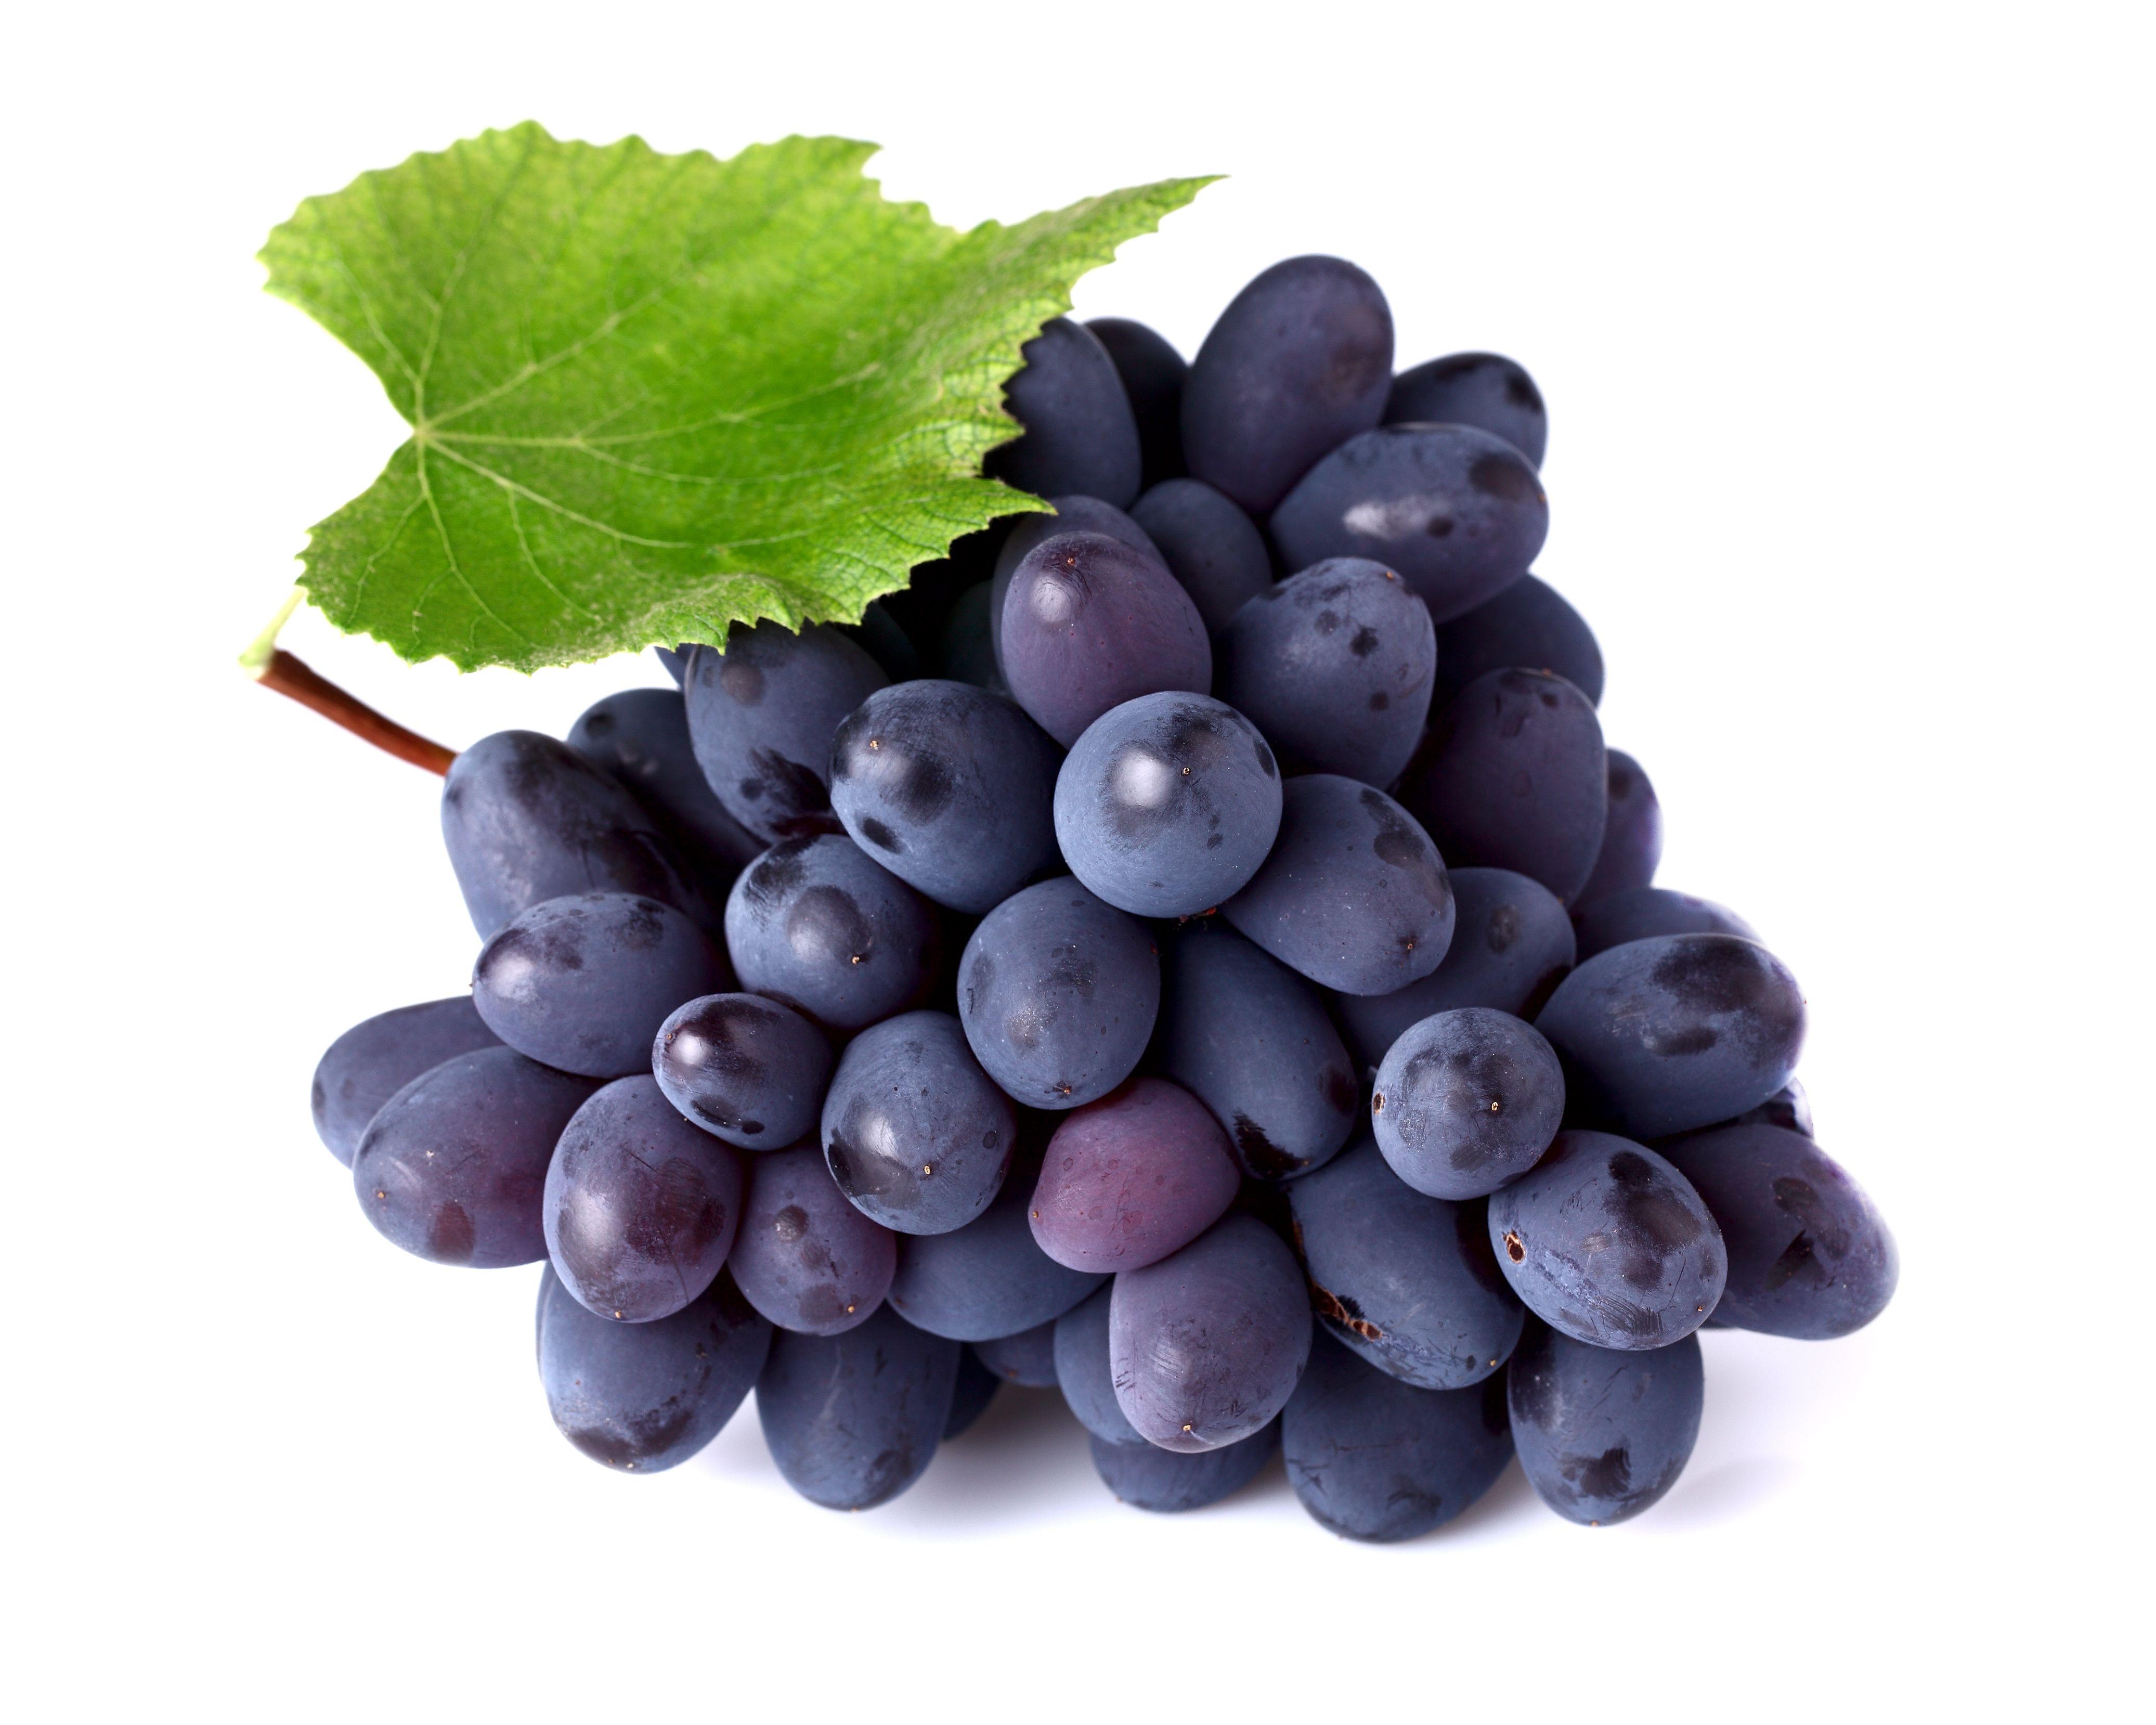 V.775: Grapes Image, HD Image of Grapes, Ultra HD 4K Grapes Wallpaper